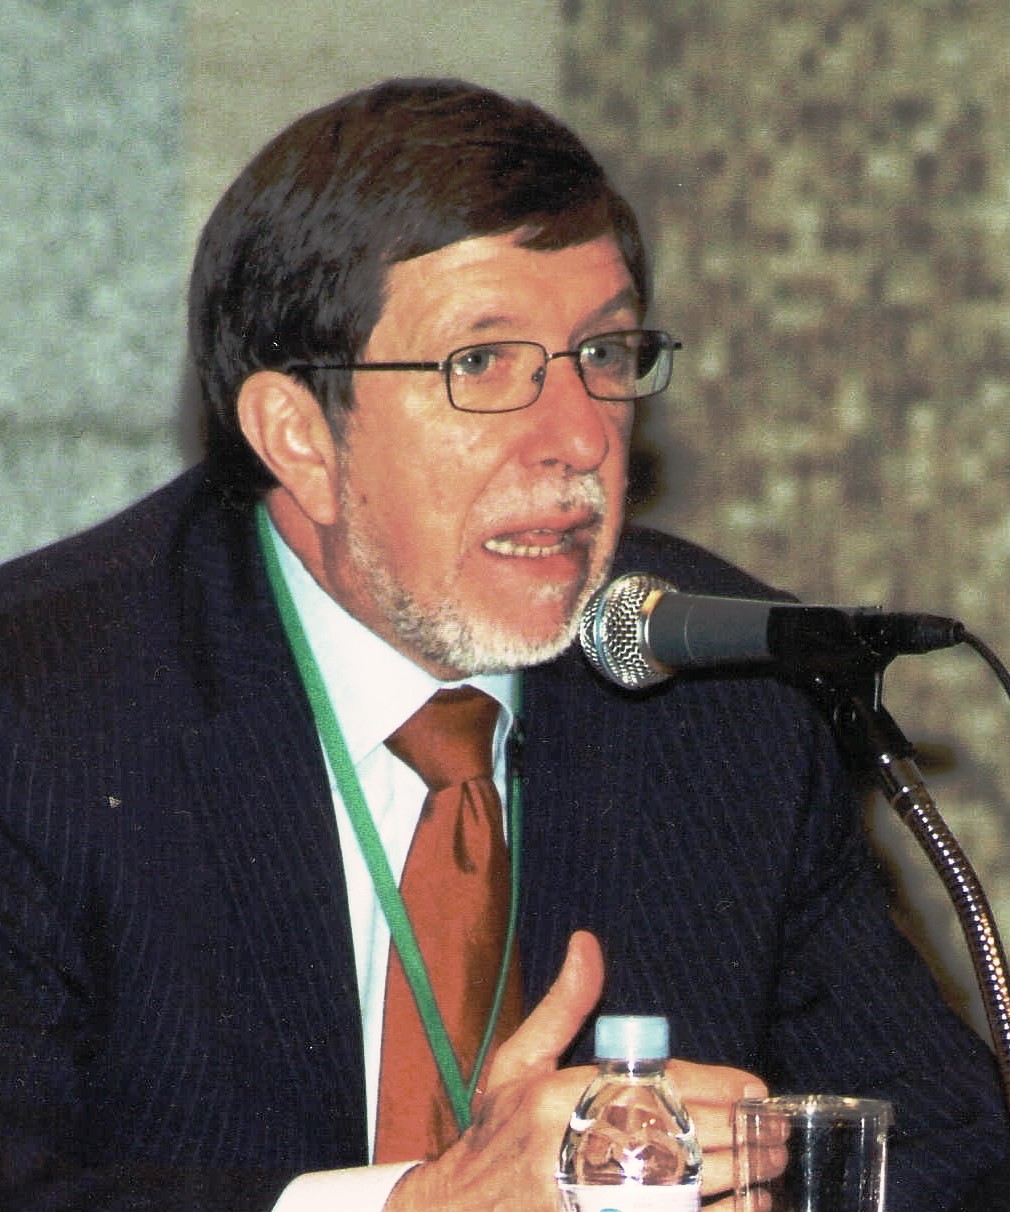 Dr. Peter Schmidt